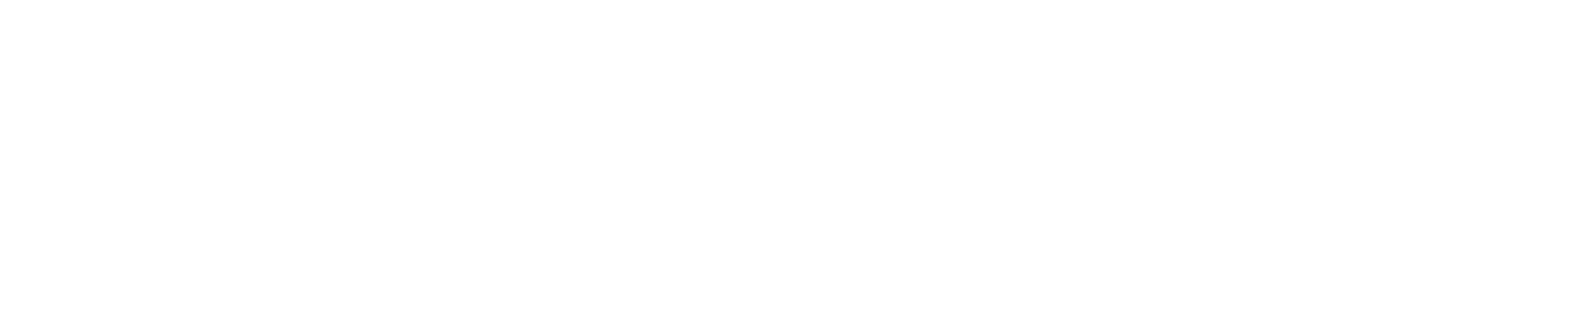 Julius Bär Logo groß für dunkle Hintergründe (transparentes PNG)